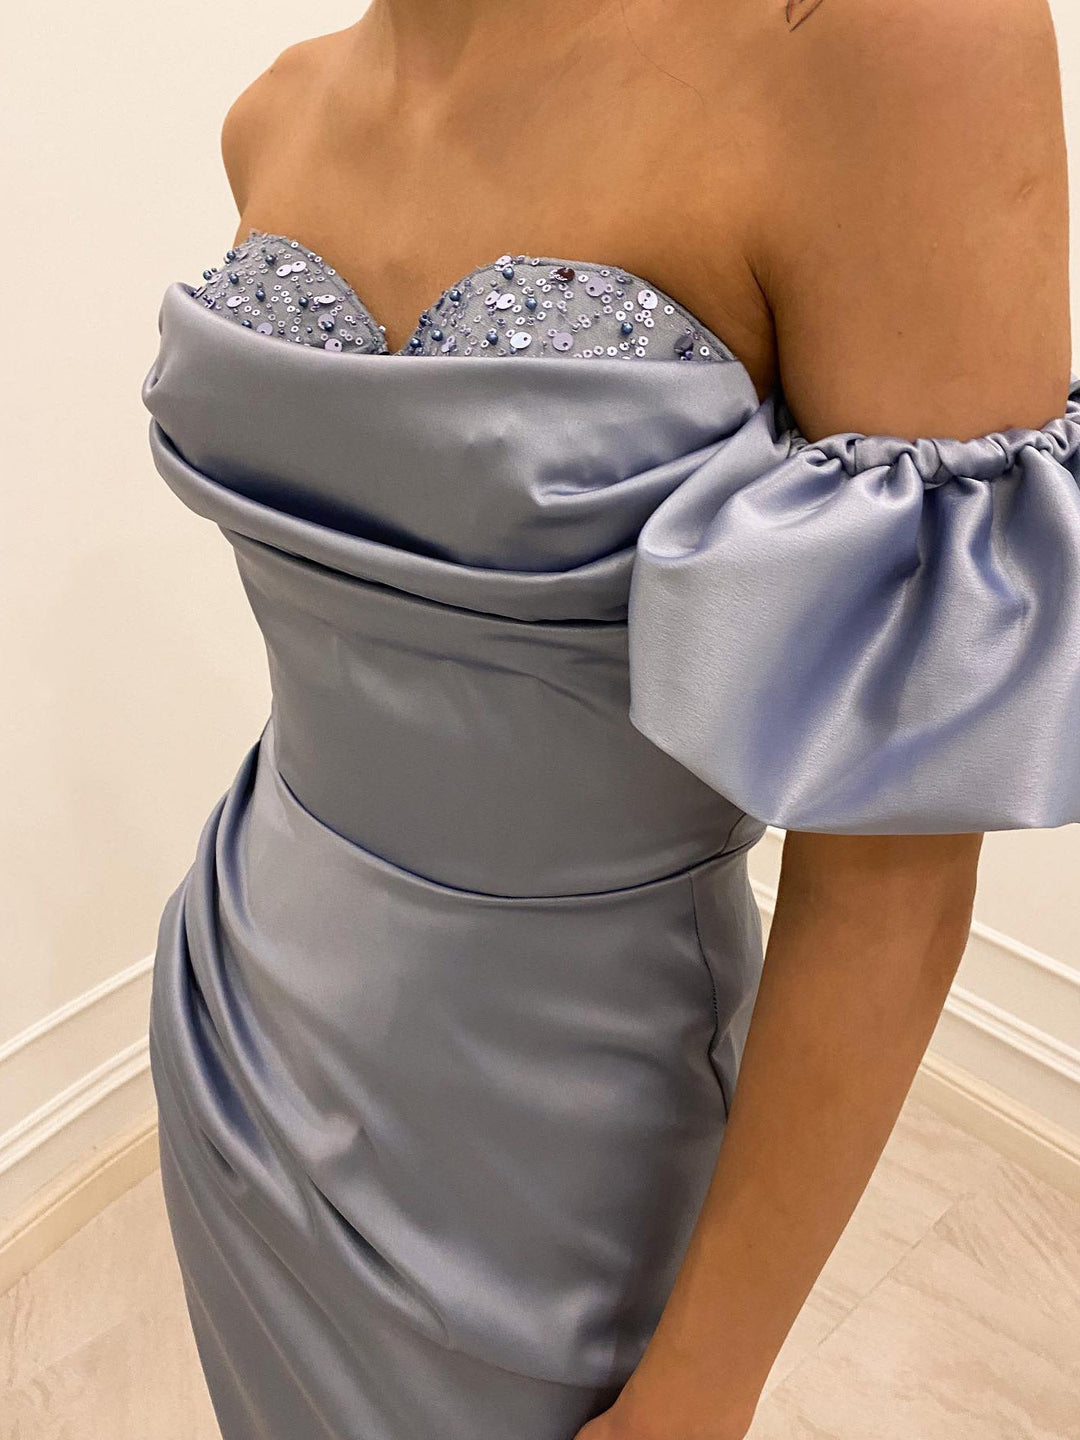 Sheath/Column Off-the-Shoulder Floor-length Long Dresses With Split Side & Sequins